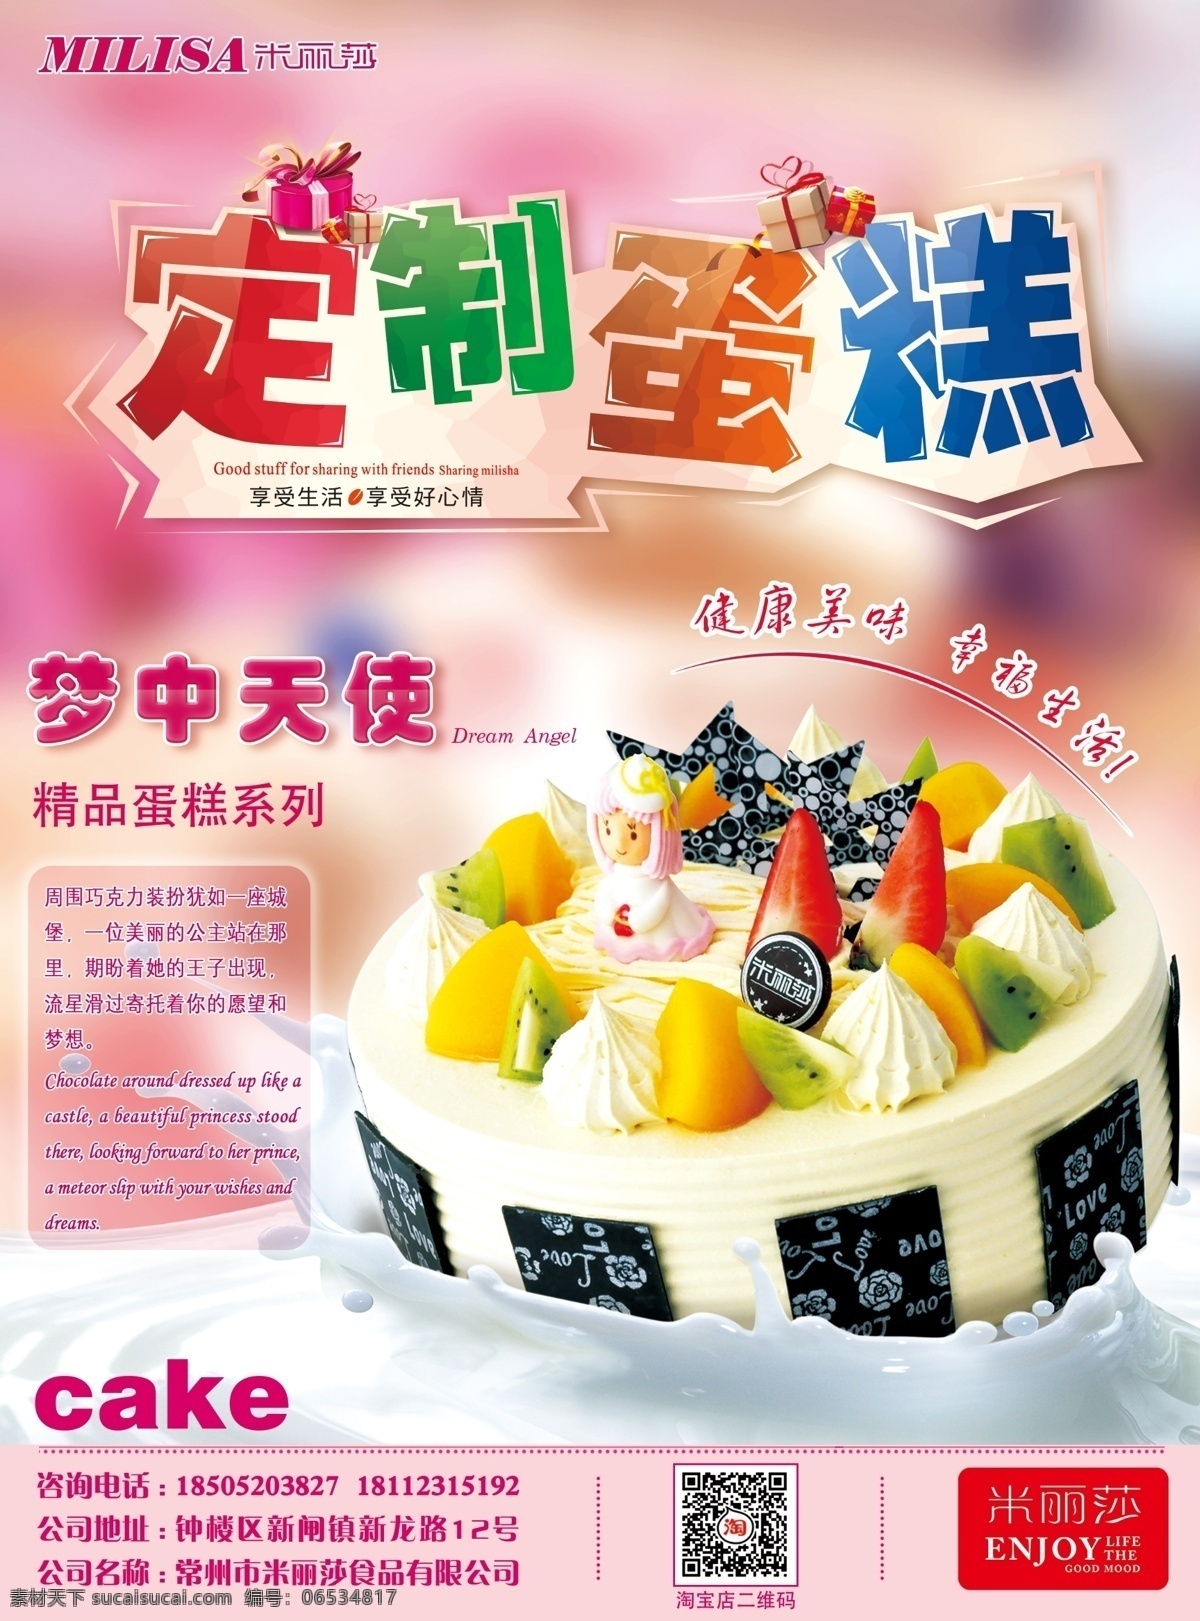 生日蛋糕 定制 蛋糕 定制蛋糕 生日 折页 海报 cake 烘焙 面包 节日蛋糕 米丽莎 奶油蛋糕 巧克力蛋糕 白色